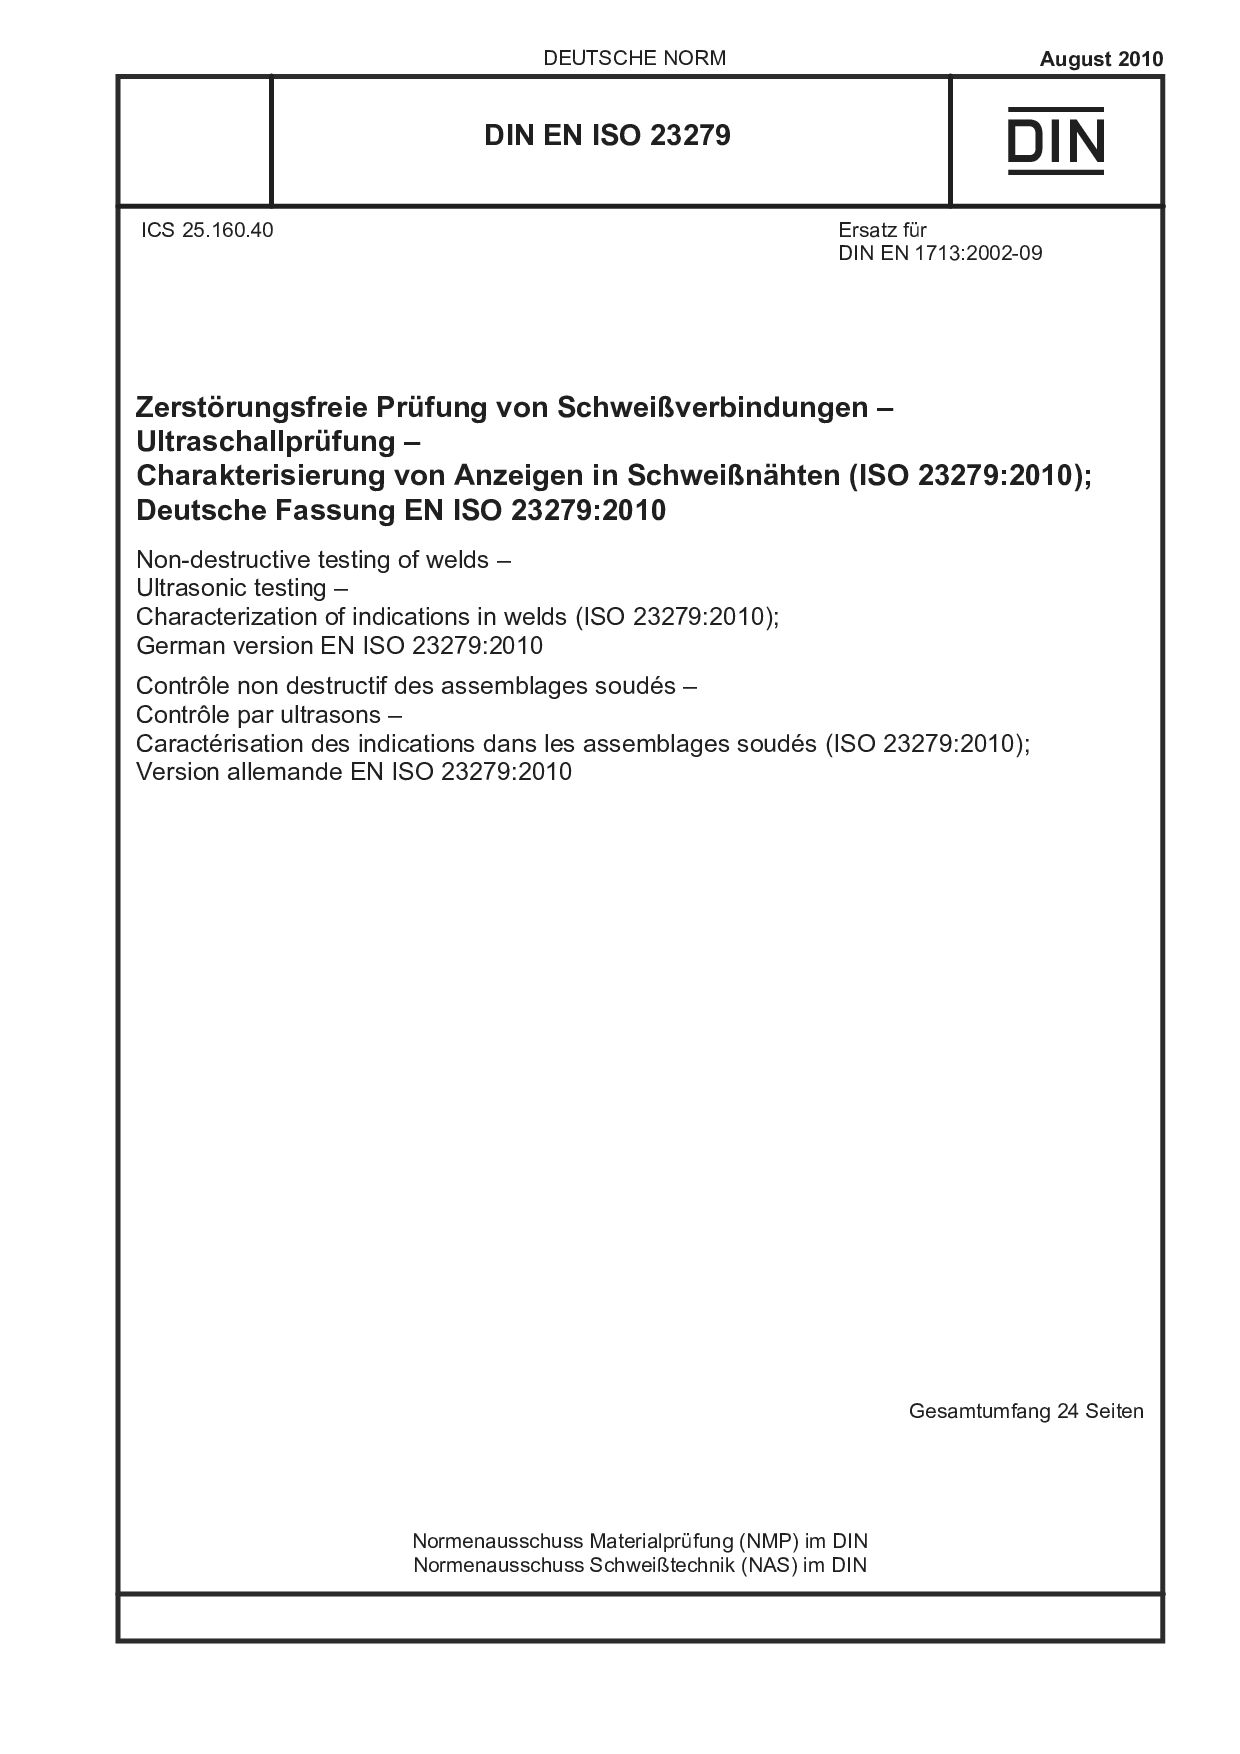 DIN EN ISO 23279:2010封面图